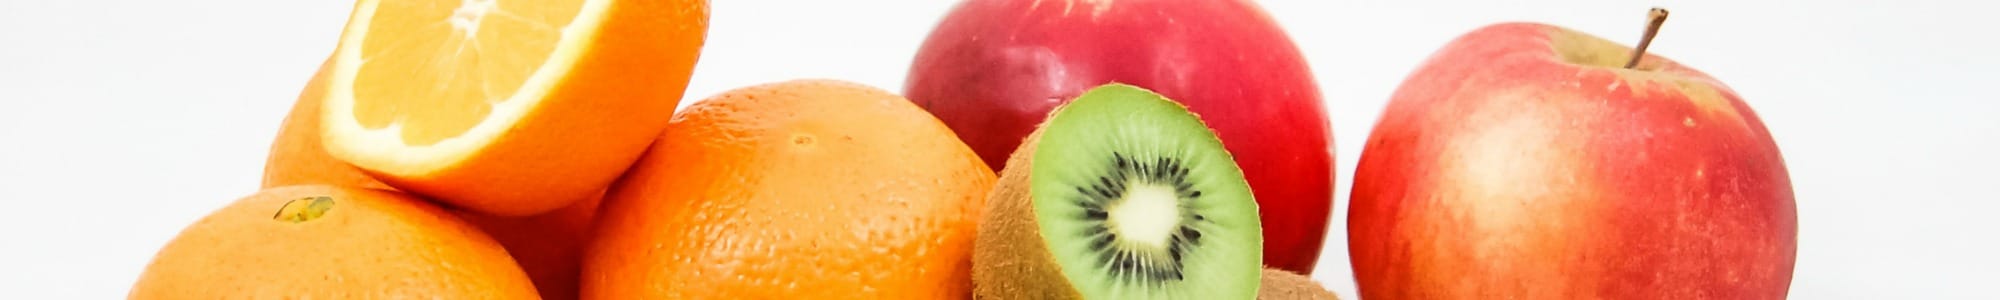 Fruits banner image